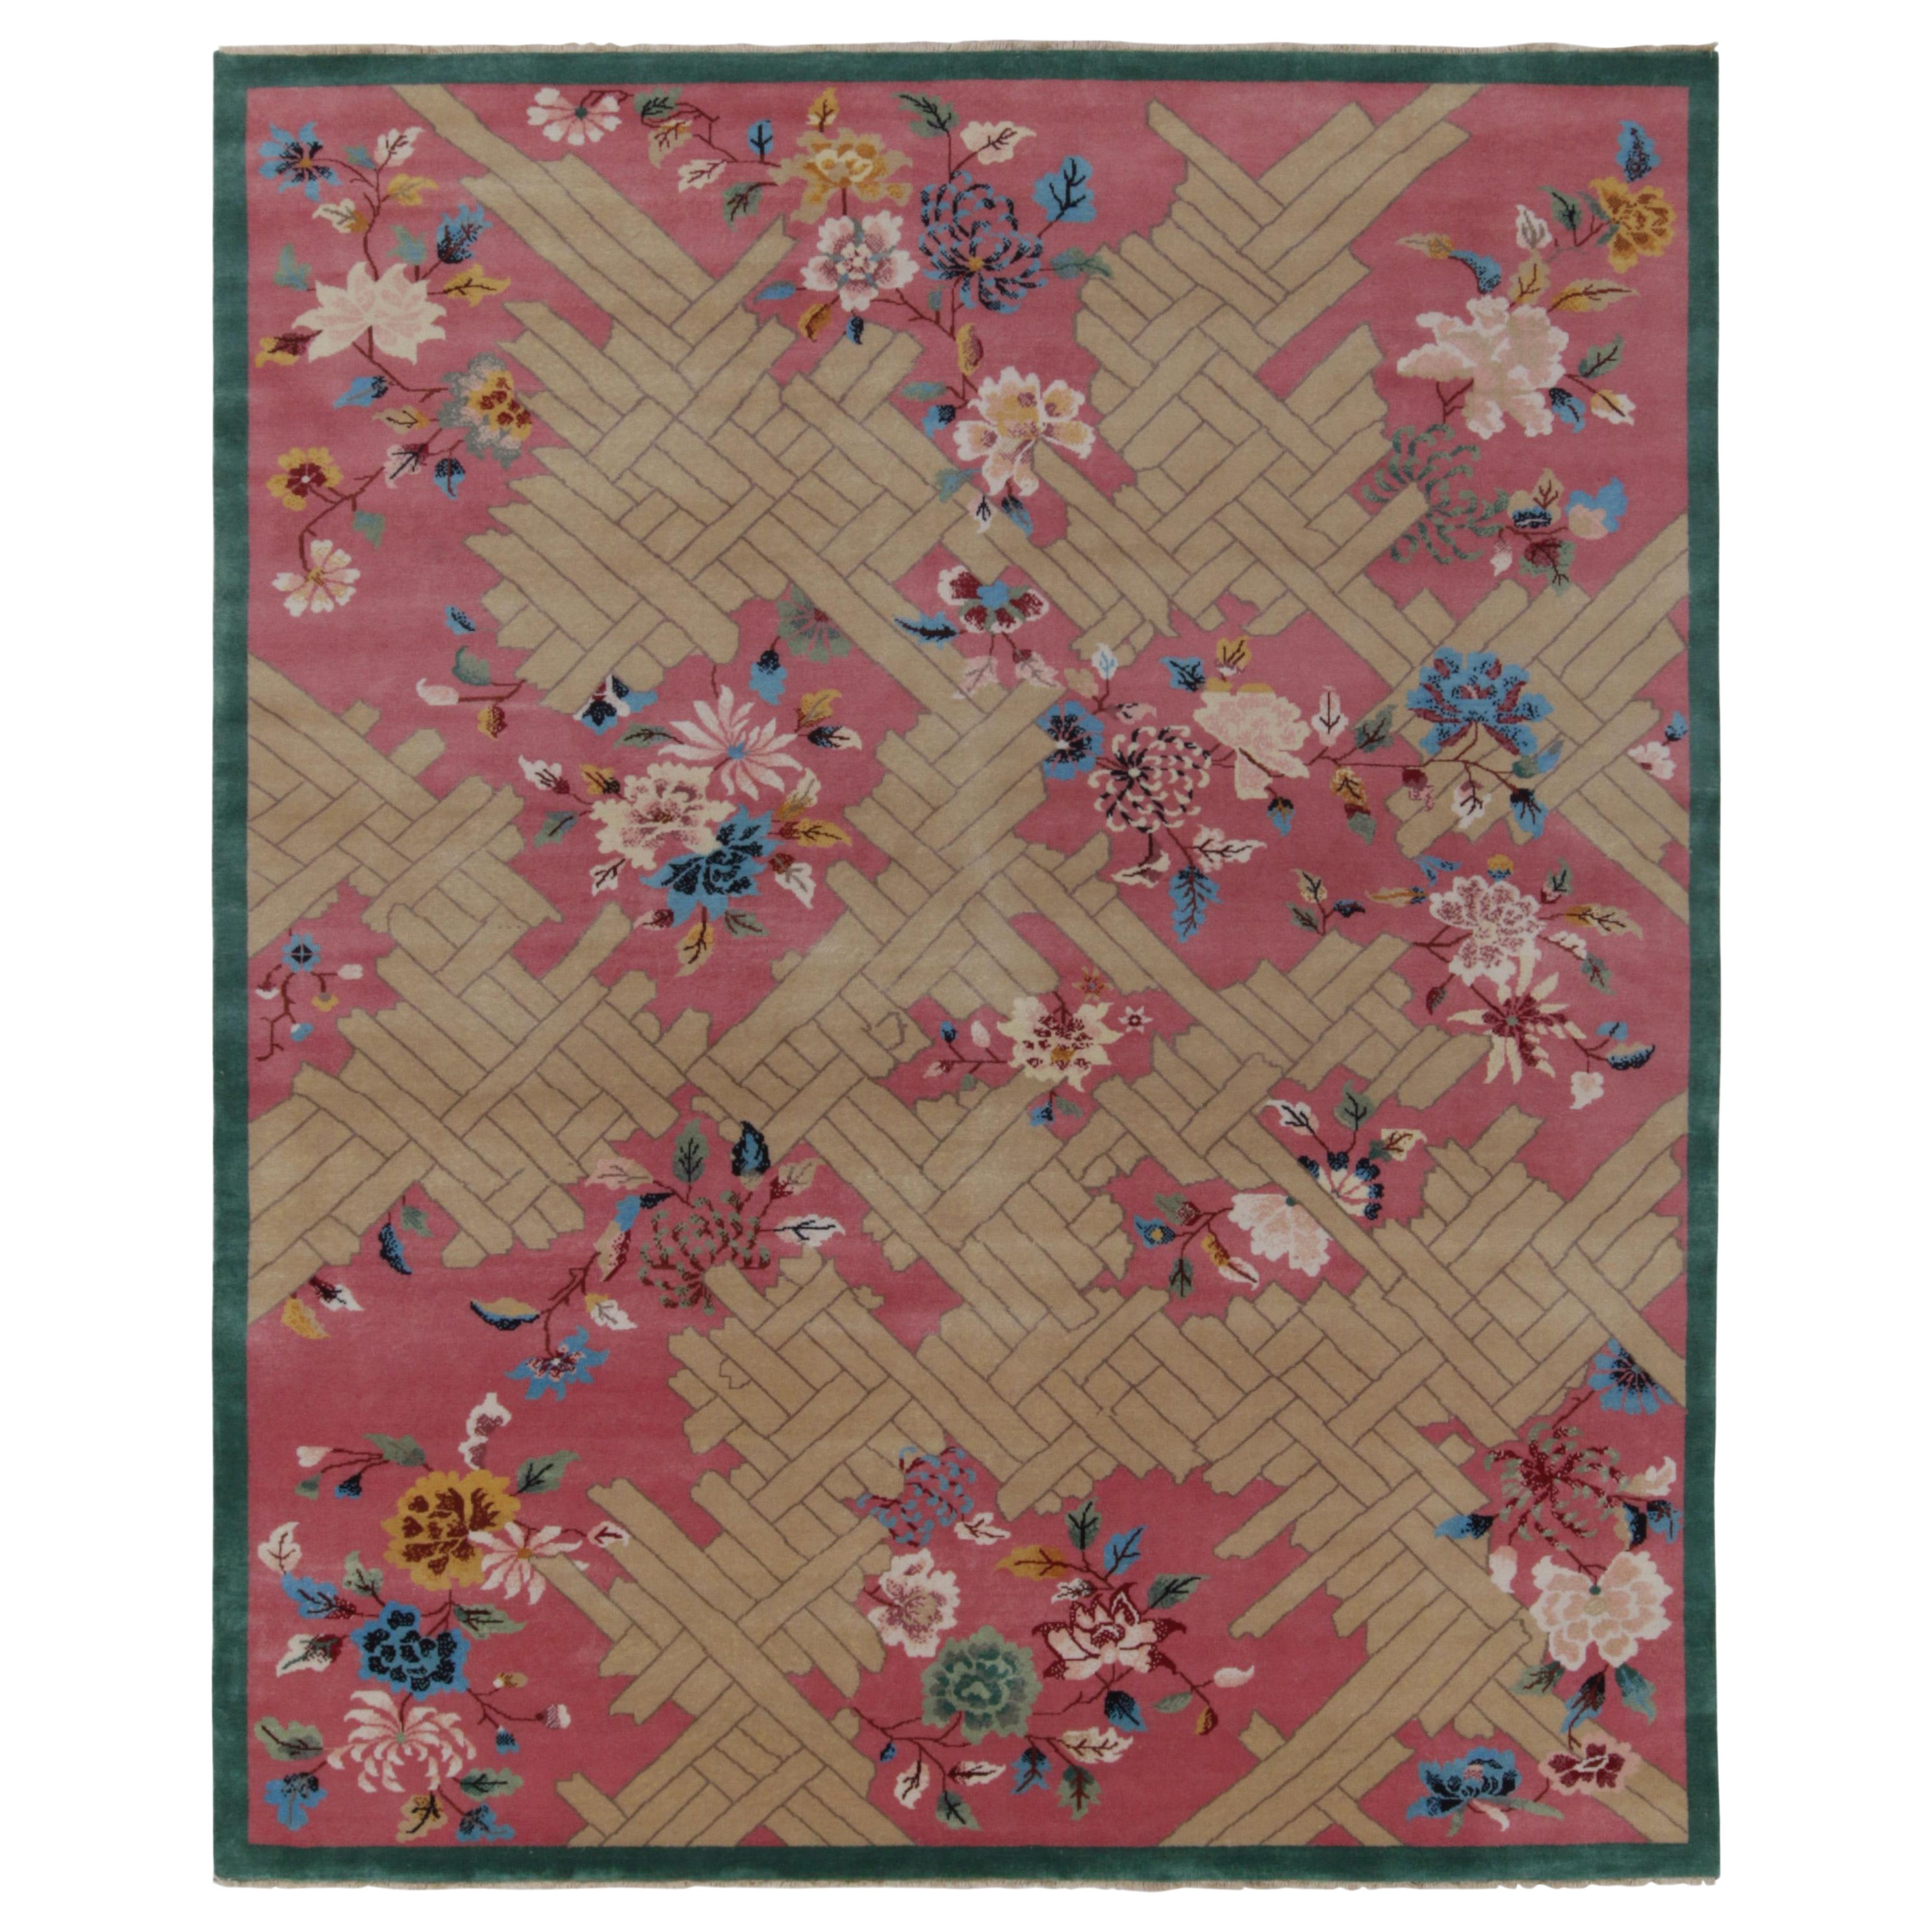 Chinesischer Teppich im Deko-Stil von Teppich &amp; Kilims in Rosa, Beige und Blau mit Blumenmuster